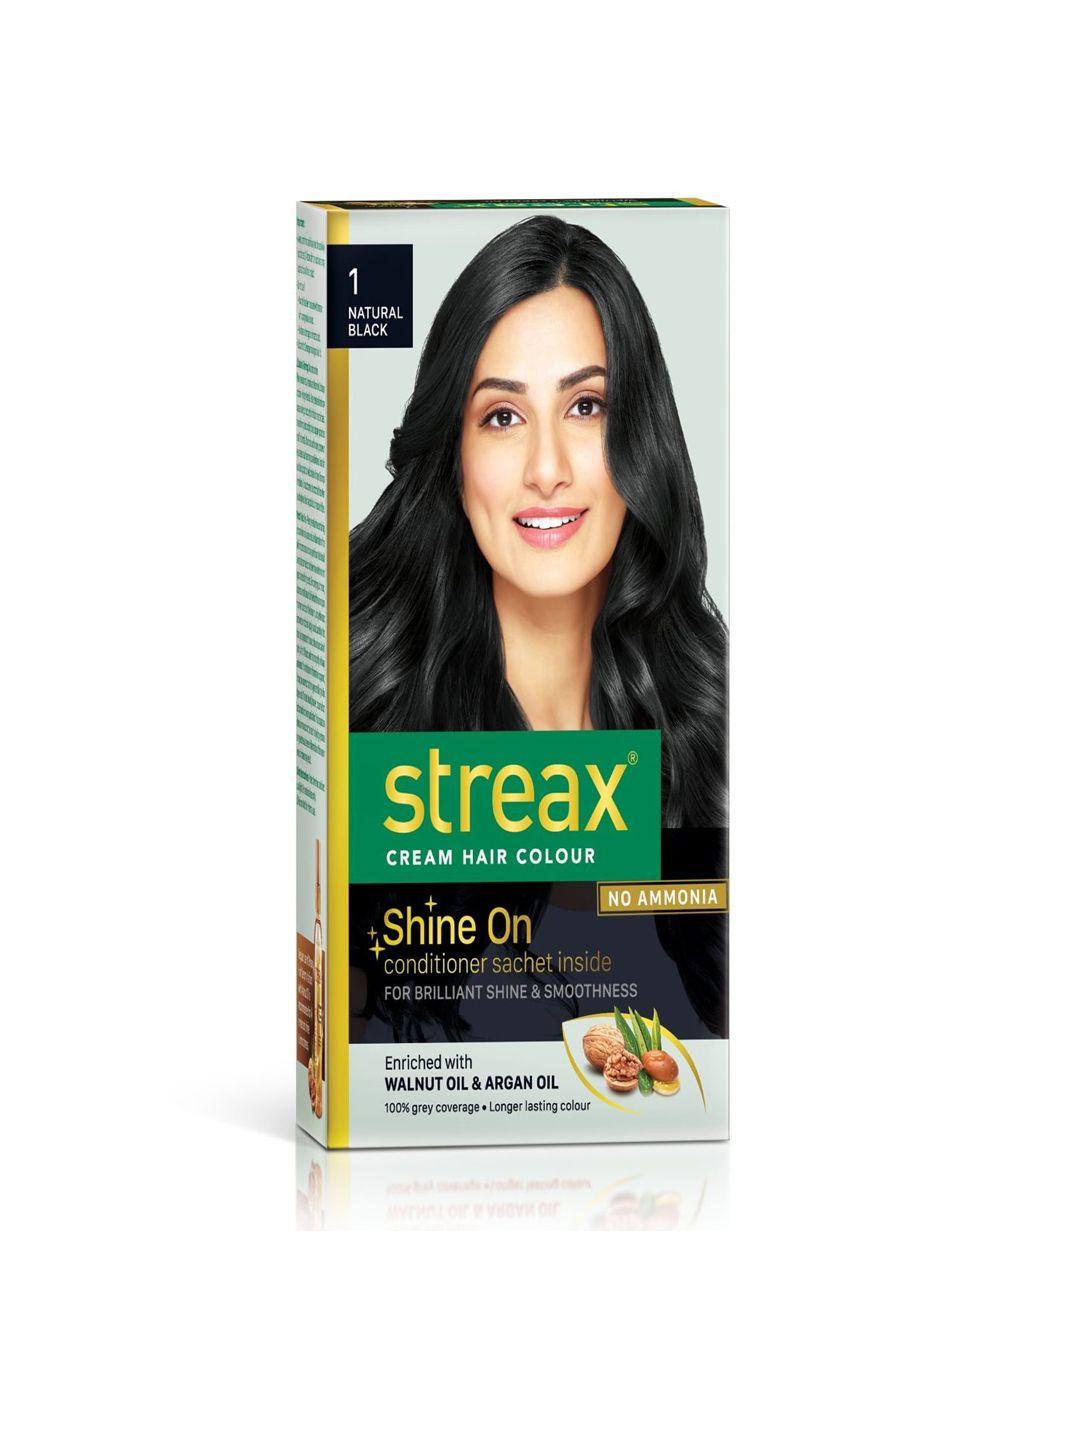 streax hair colour - 1 natural black 120 ml